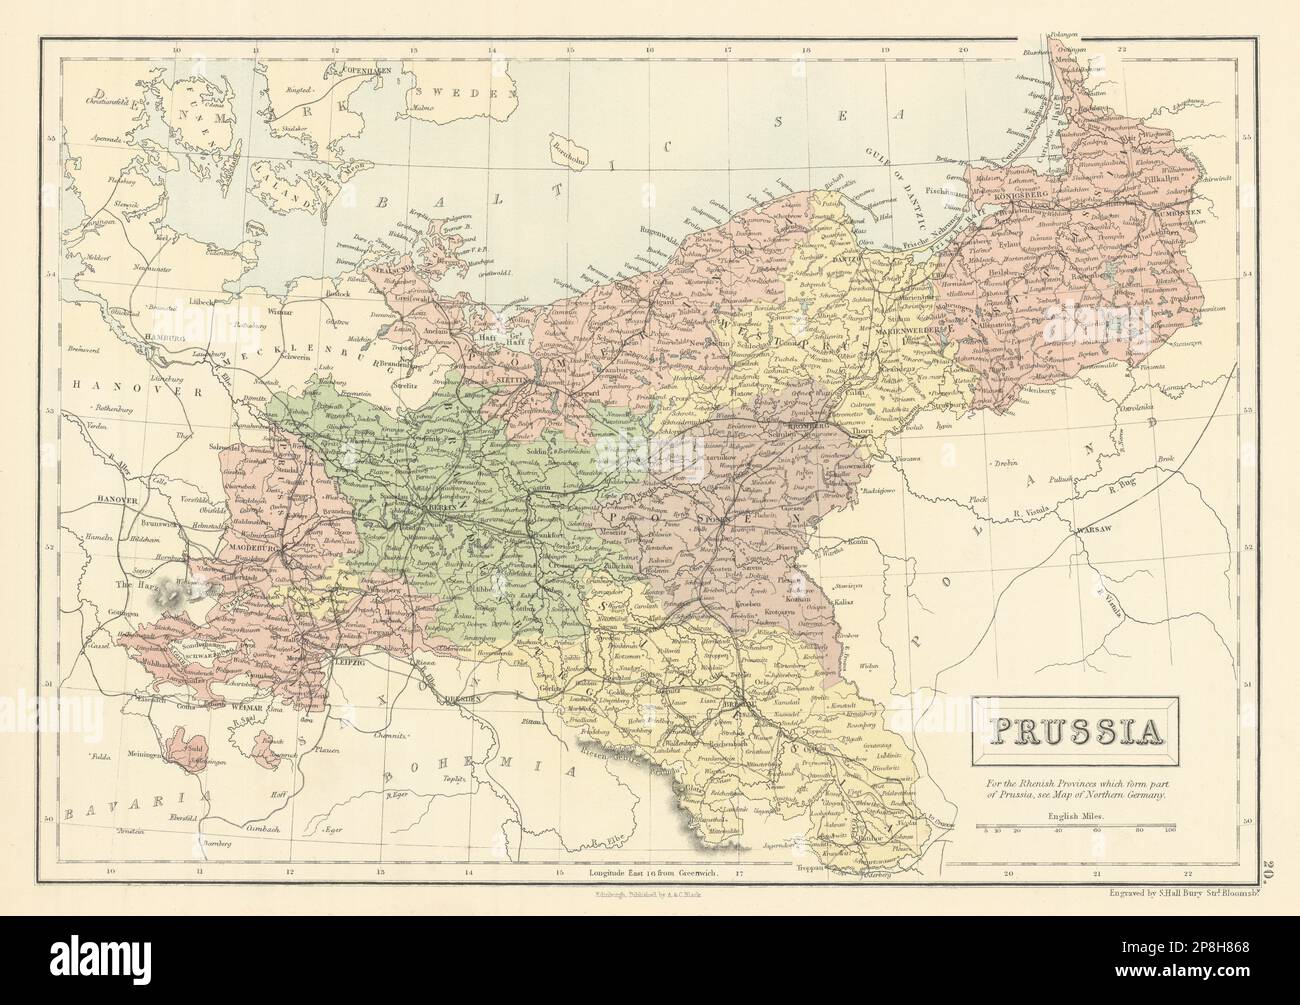 Prussia. Pomerania Poland Silesia Posen Brandenburg. SIDNEY HALL 1862 old map Stock Photo